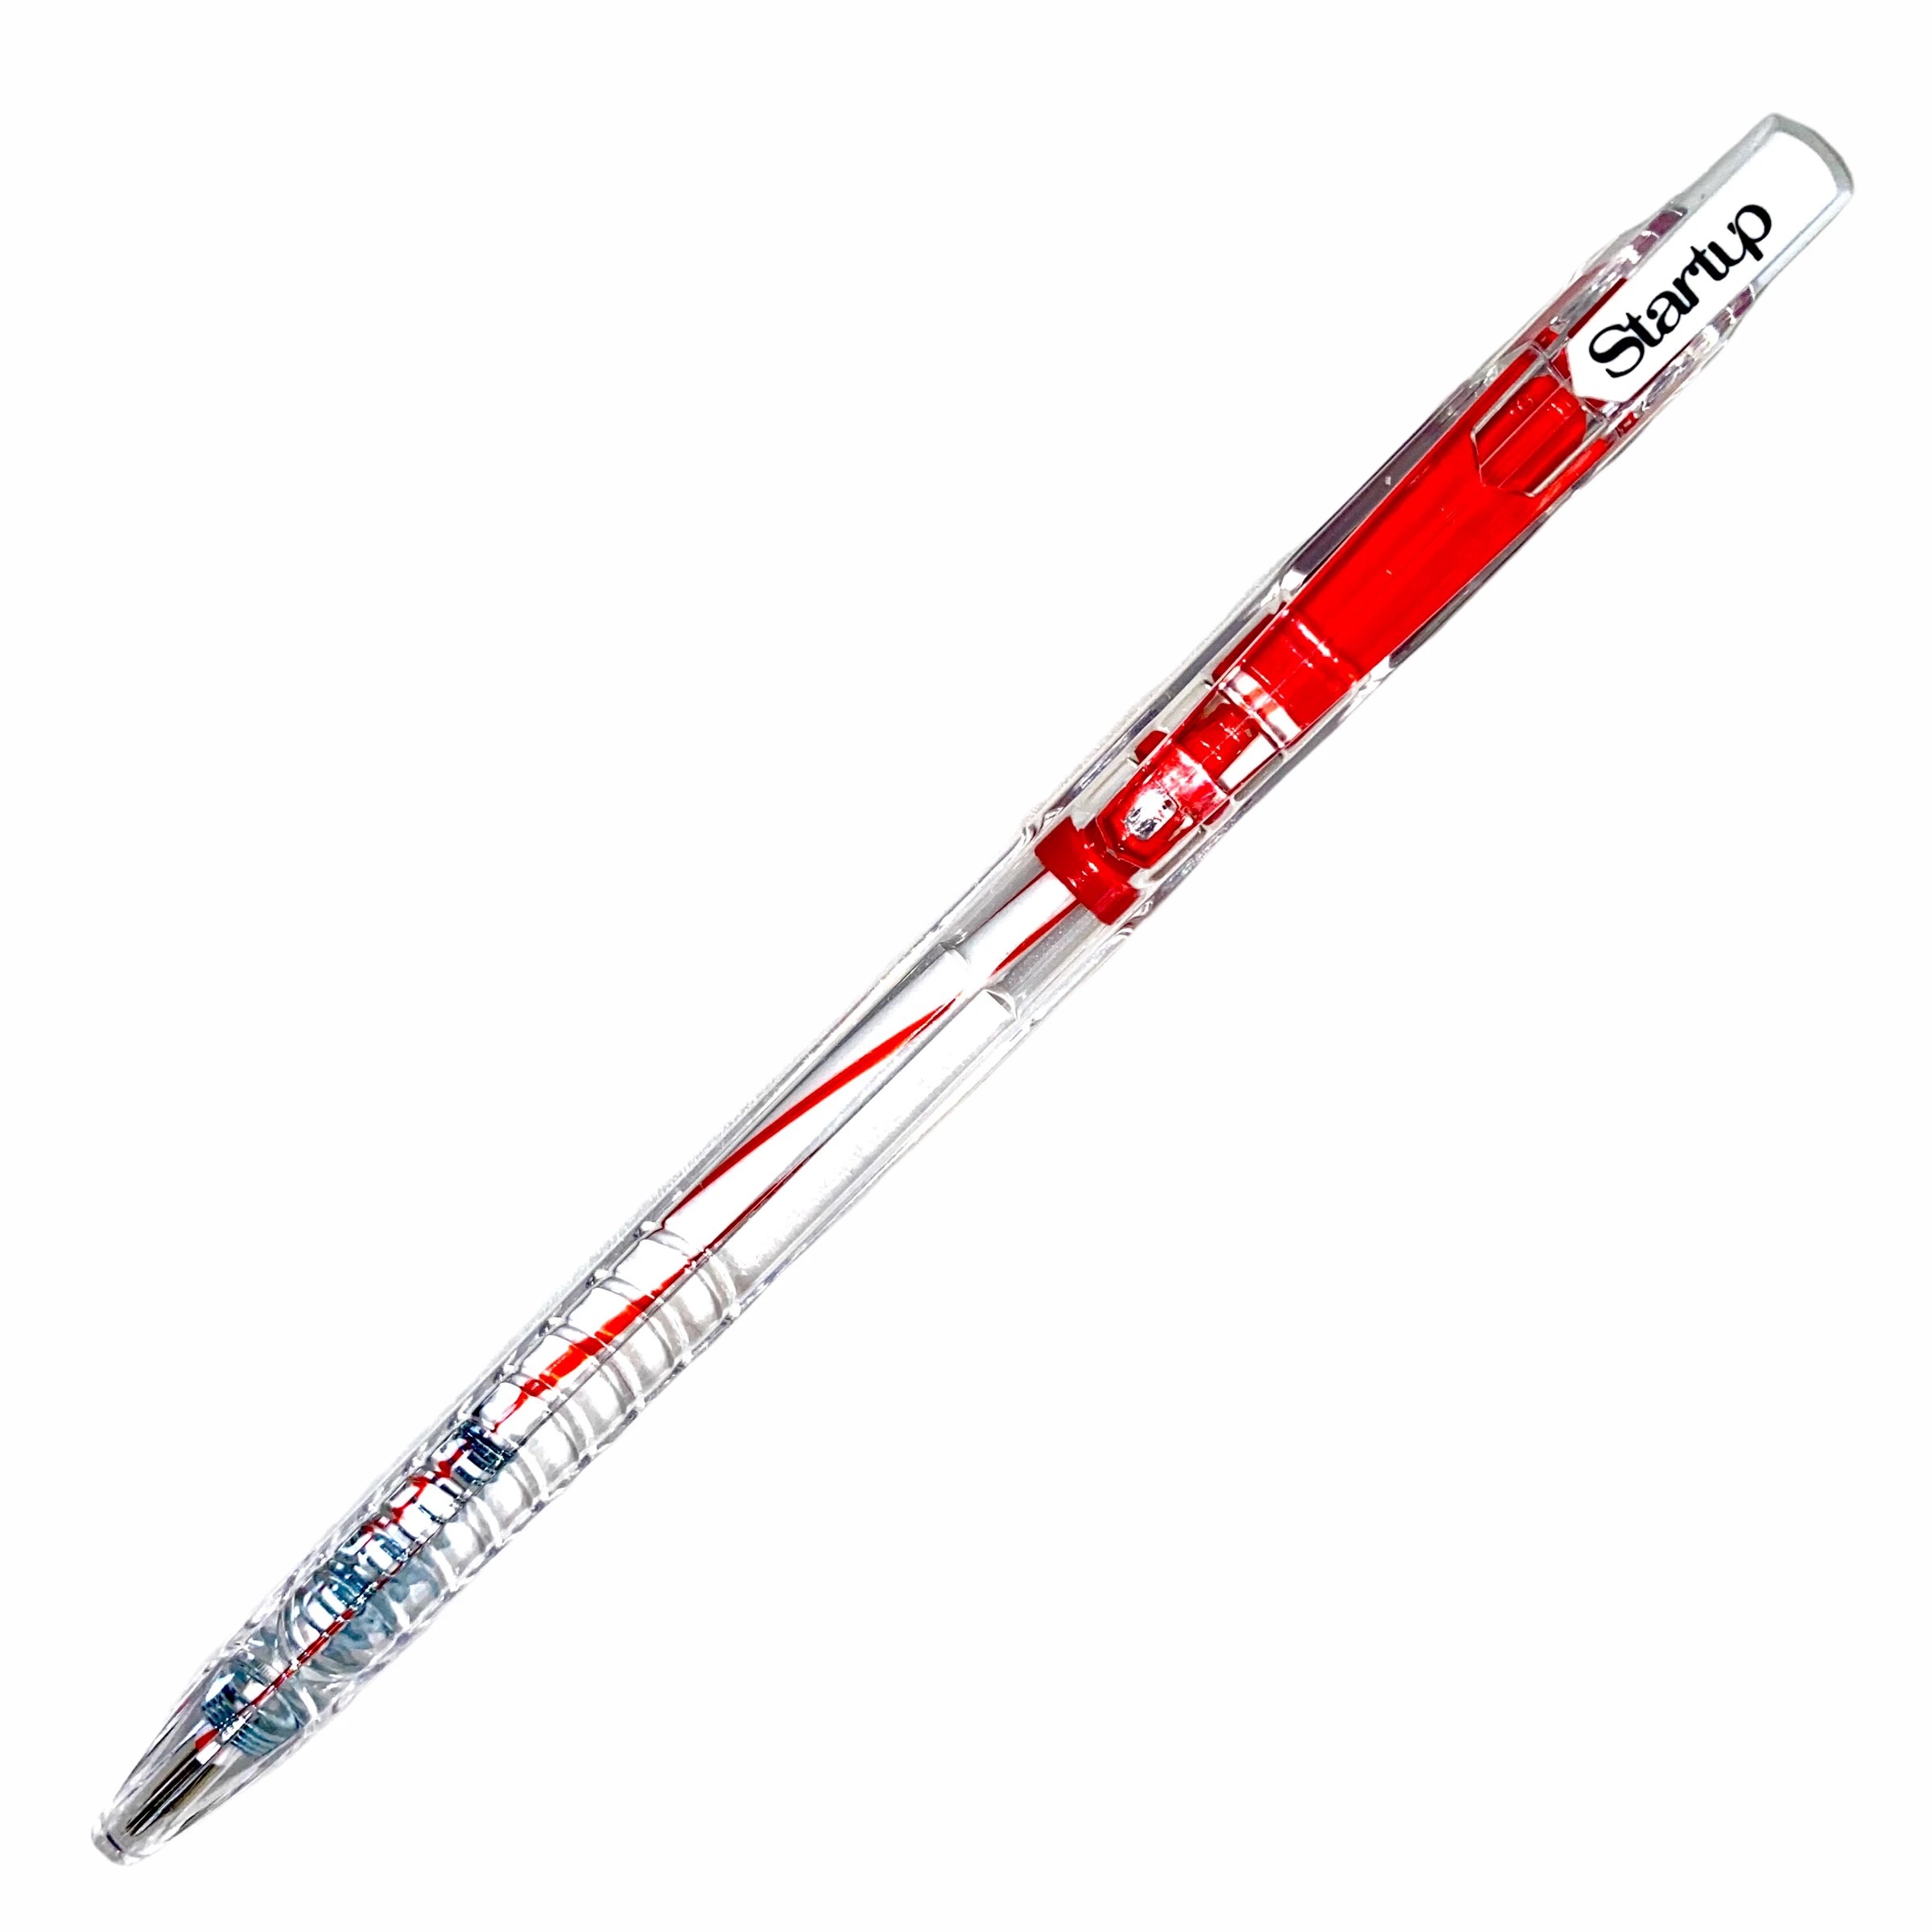 Lốc 10 bút bi FO-039 xanh + đỏ